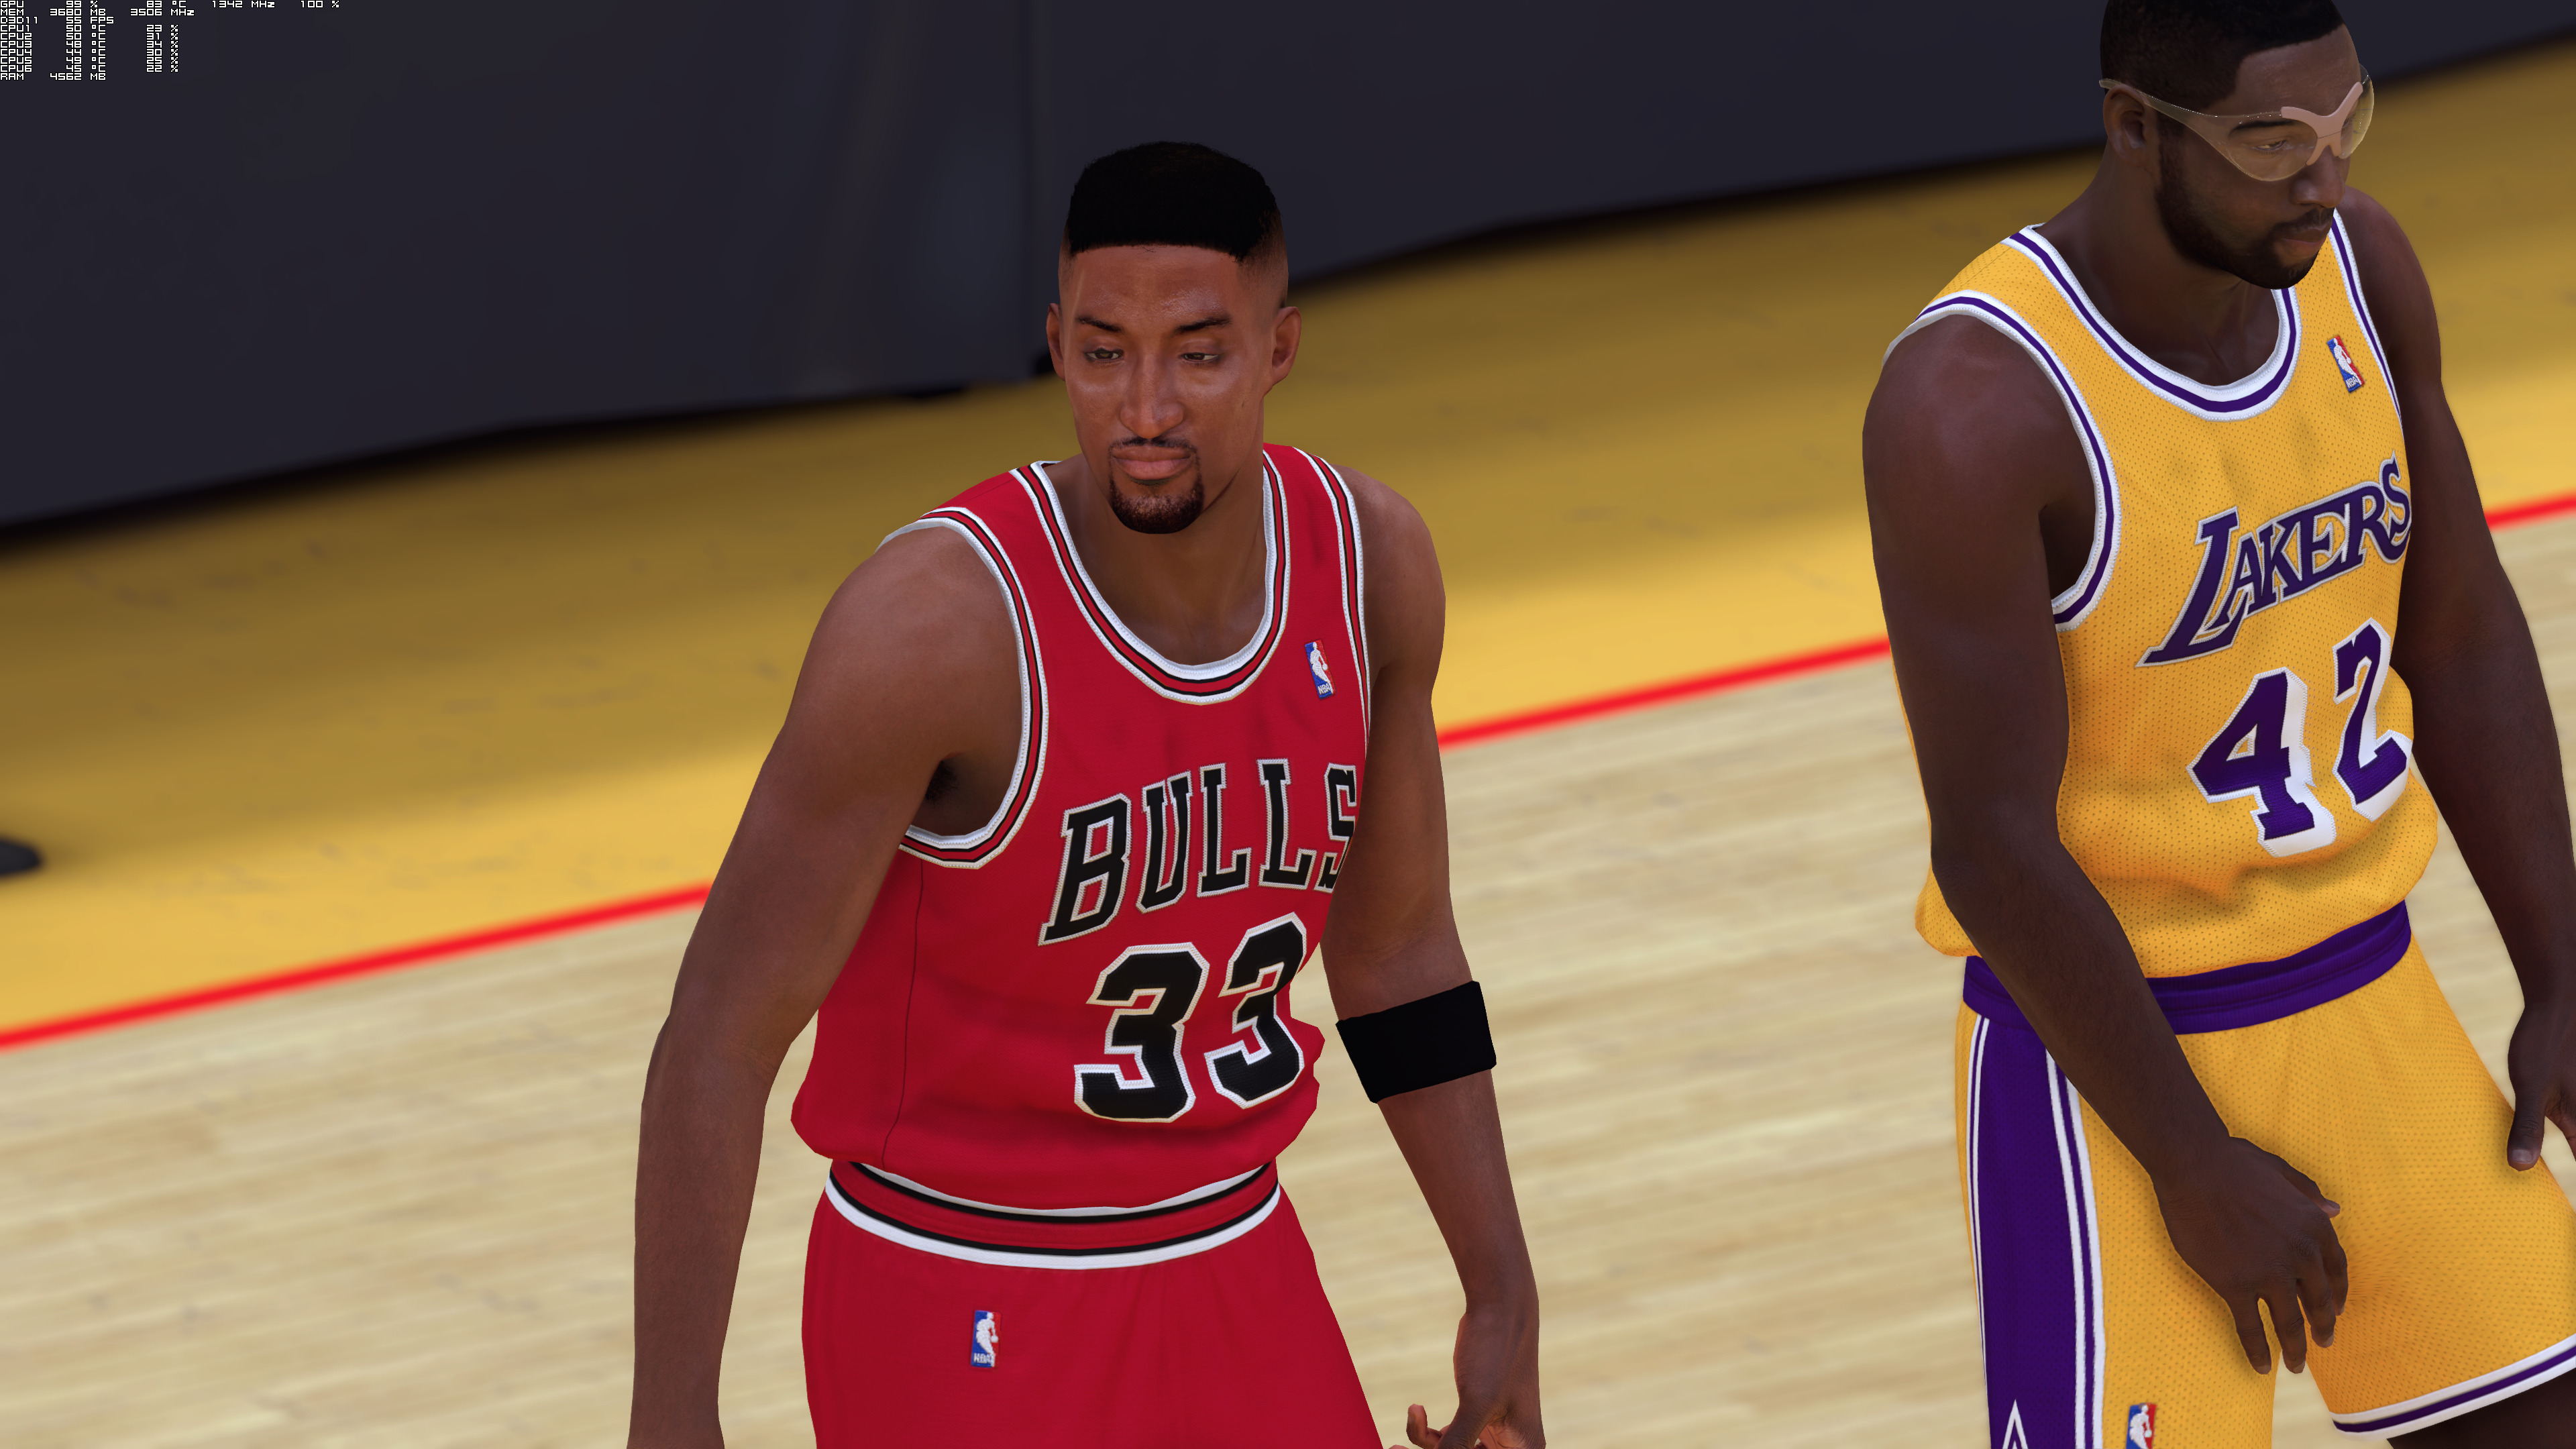 《NBA 2K19》4K高清截图 这游戏画面你觉得进步了么